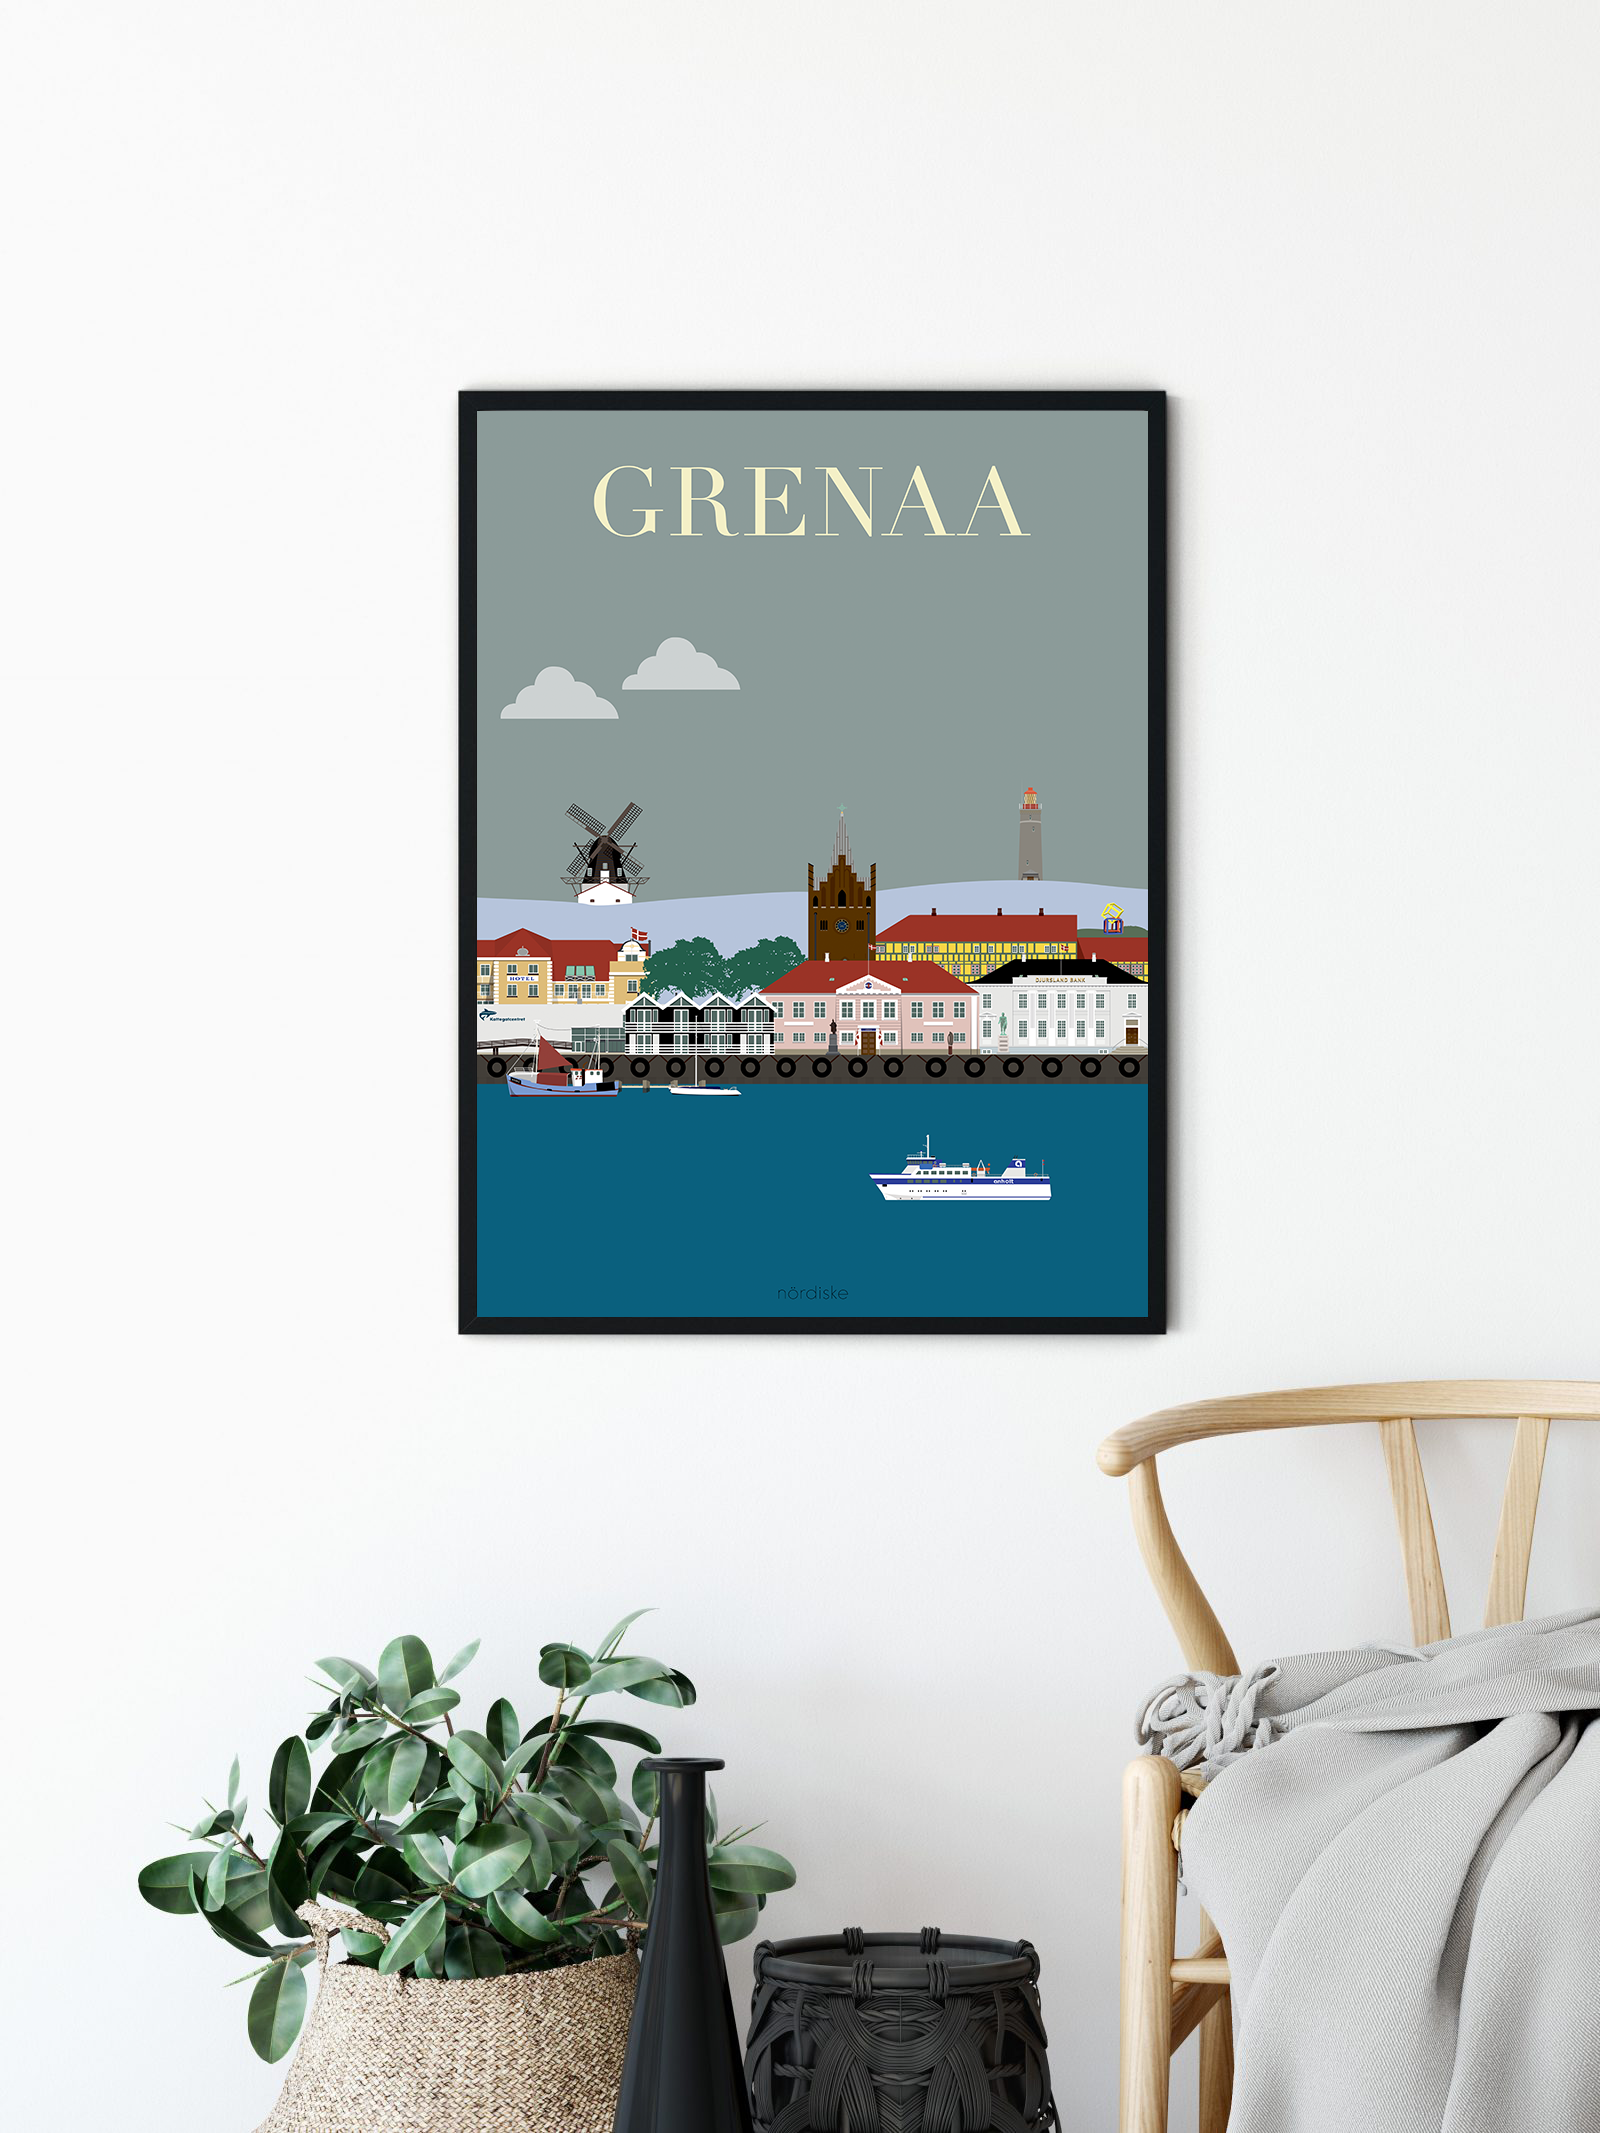 Grenaa Plakaten - de mest populære byplakater